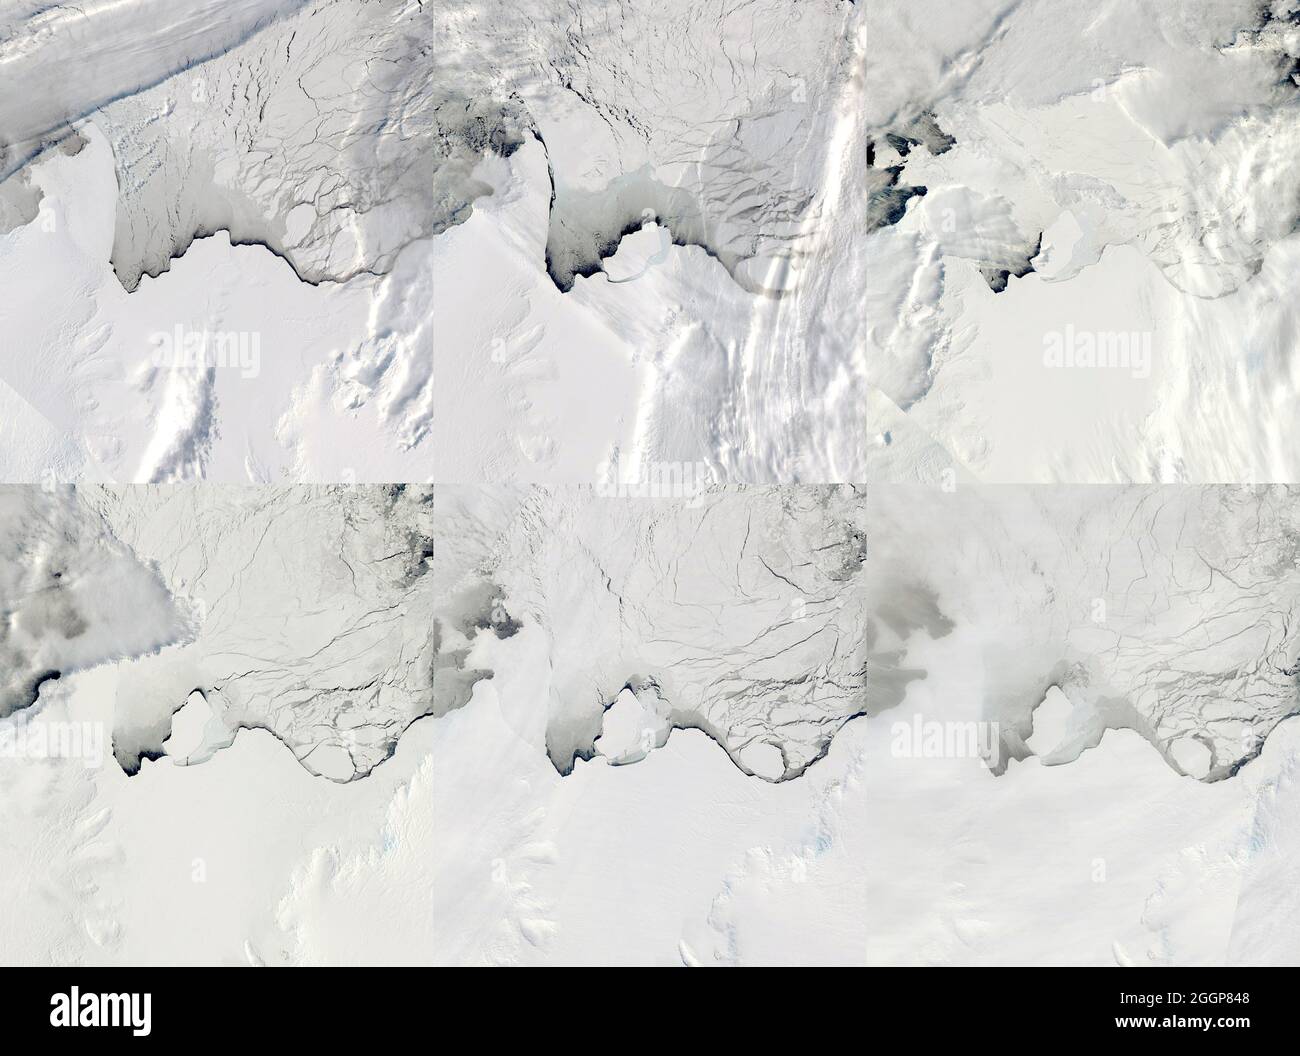 El compuesto de seis imágenes satelitales tomadas entre el 13 de septiembre y el 2 de octubre de 2019 muestran la esquisión glacial y el parto de un iceberg de la Plataforma de Hielo Amery de la Antártida Oriental. Foto de stock